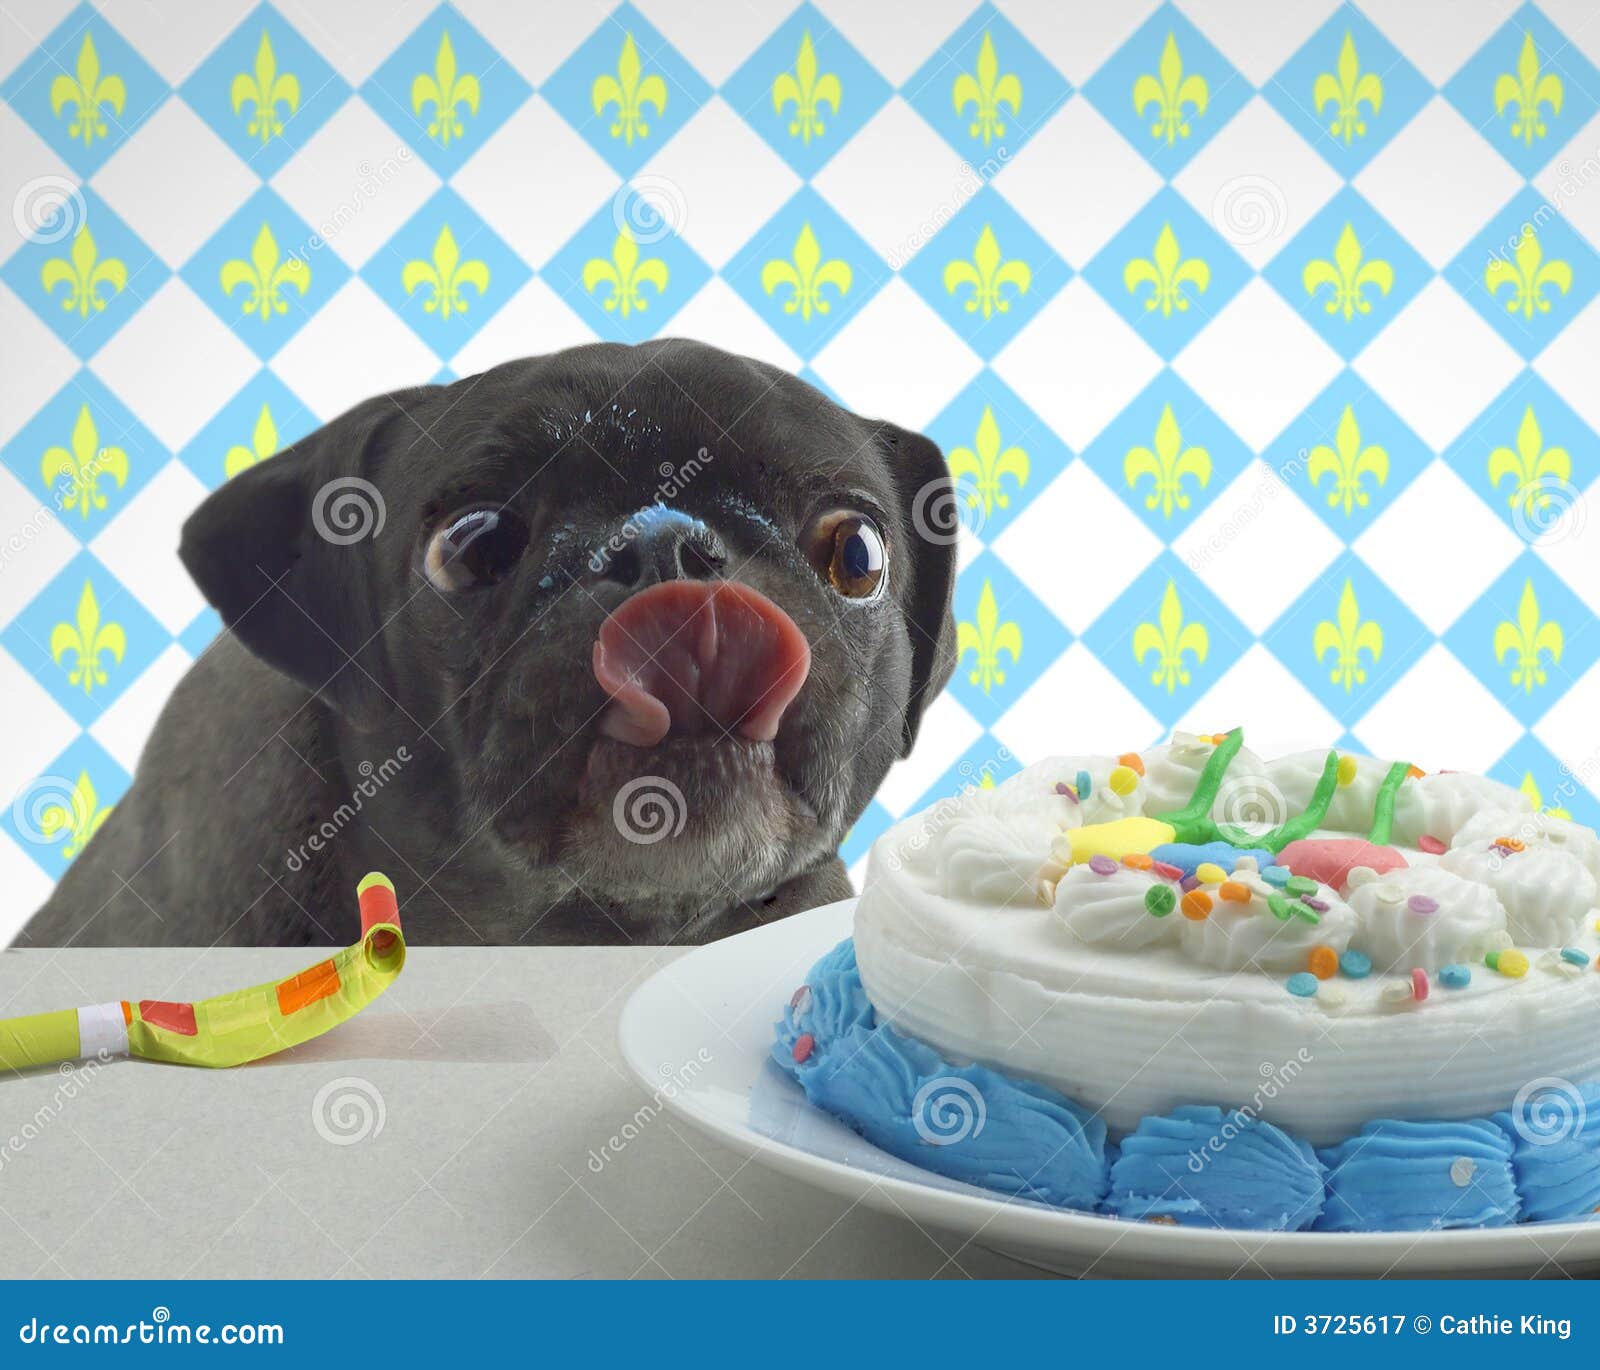 吃蛋糕的滑稽的生日狗 库存照片. 图片 包括有 宠物, 滑稽, 生日, 蛋糕, 帽子, 查出, 空间, 当事人 - 113438974